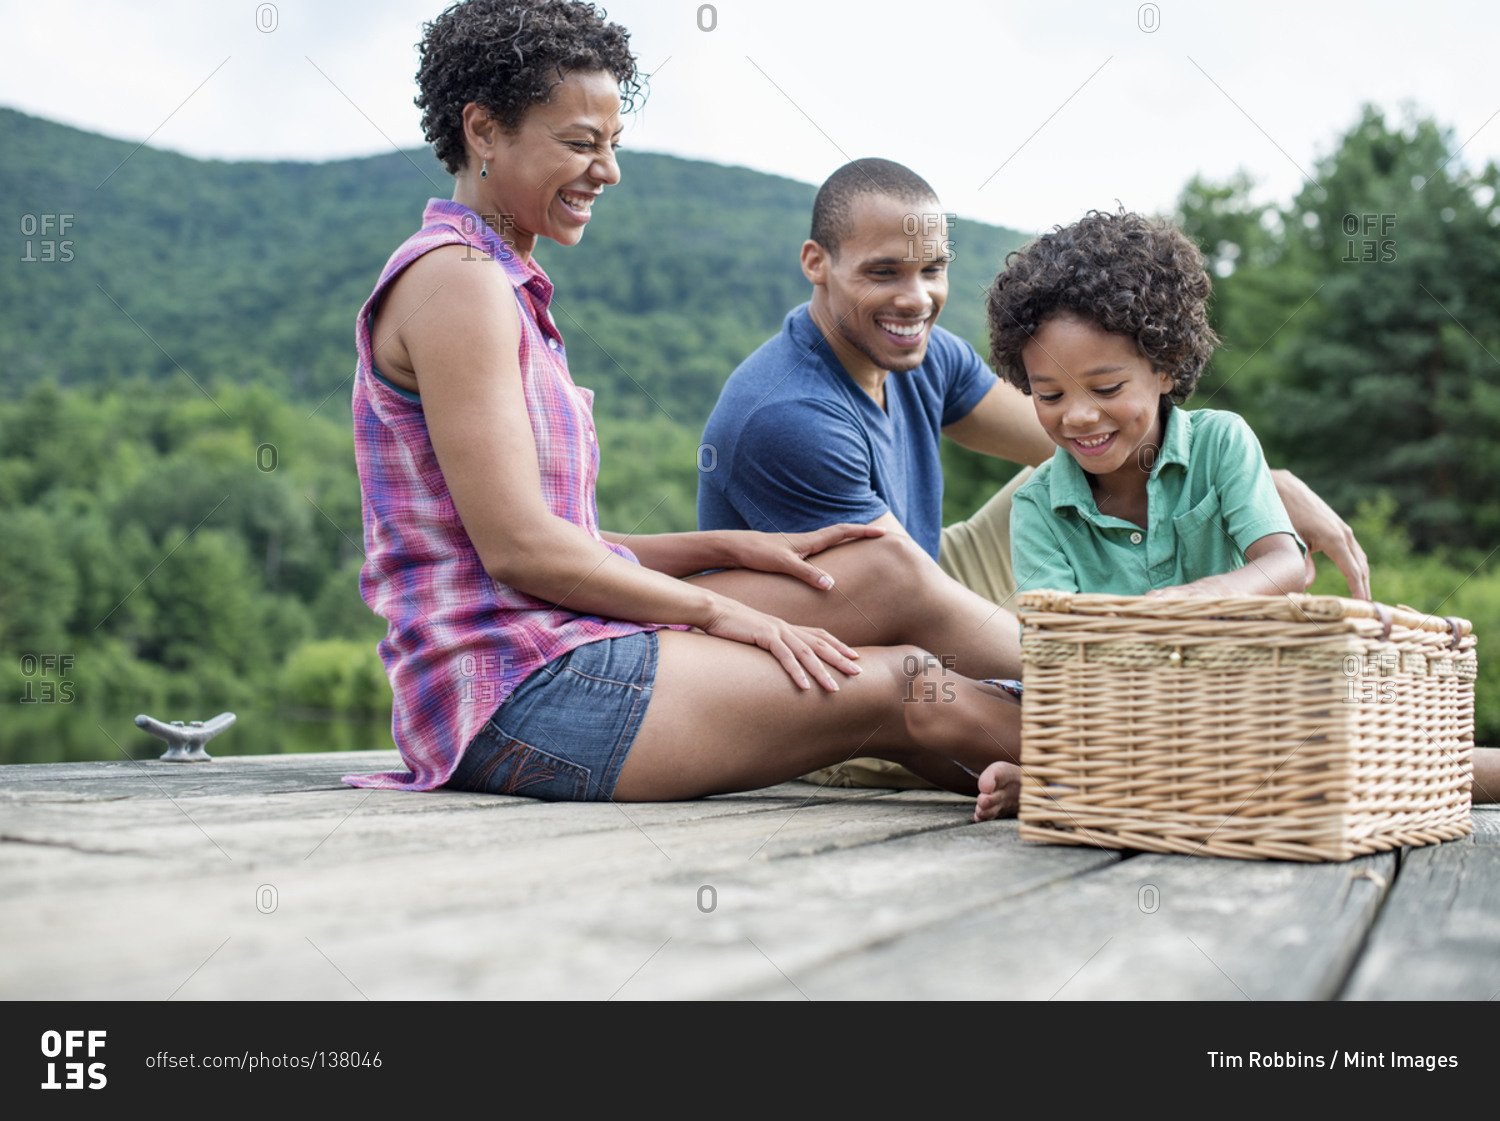 A family having a summer picnic at a lake